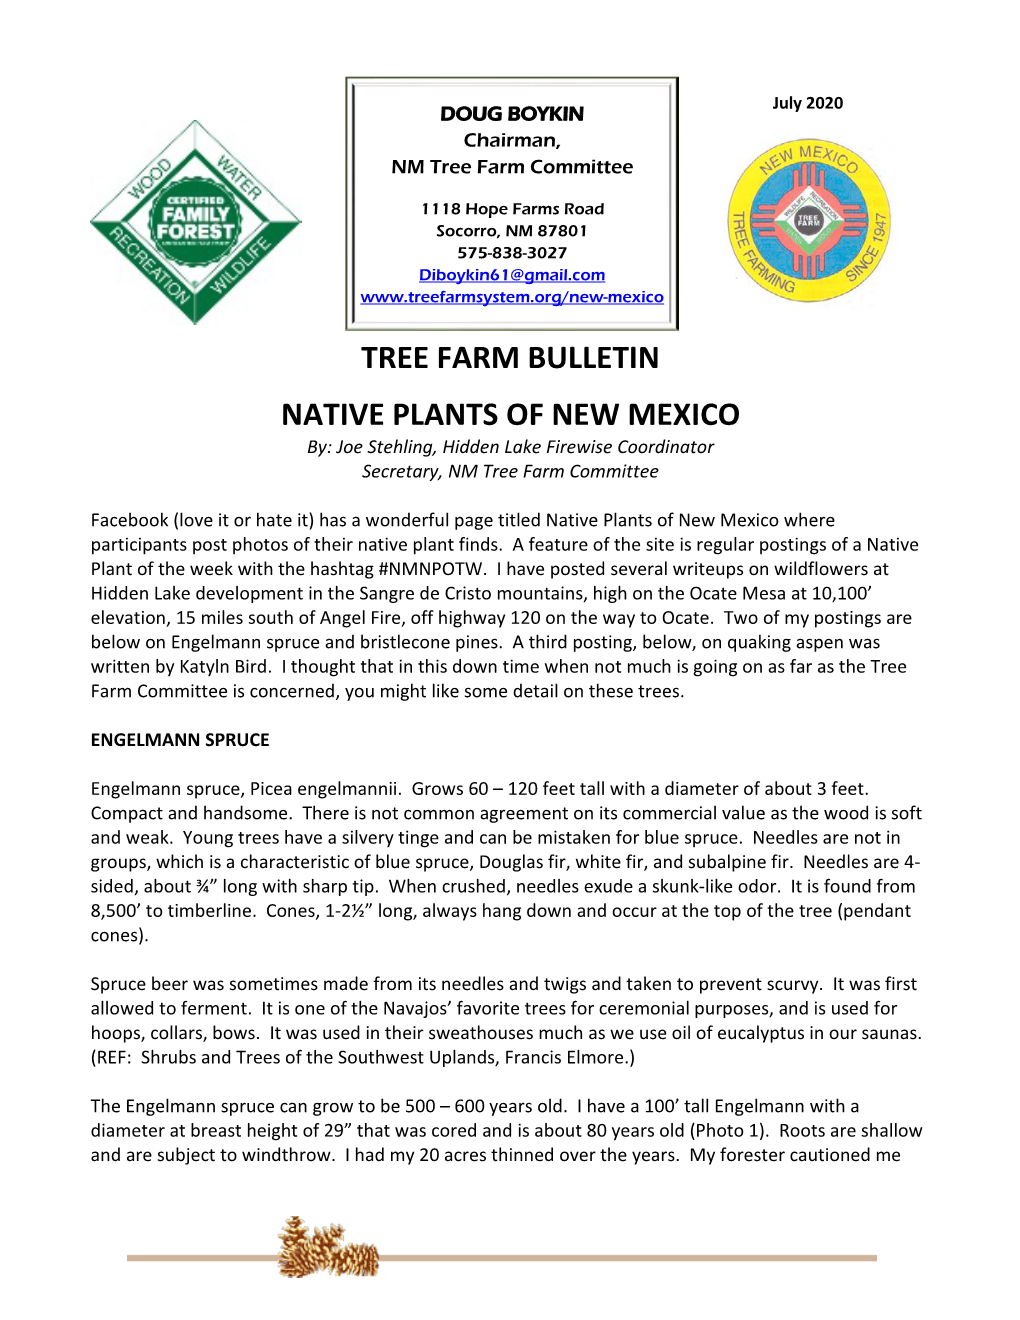 Tree Farm Bulletin Native Plants of New Mexico